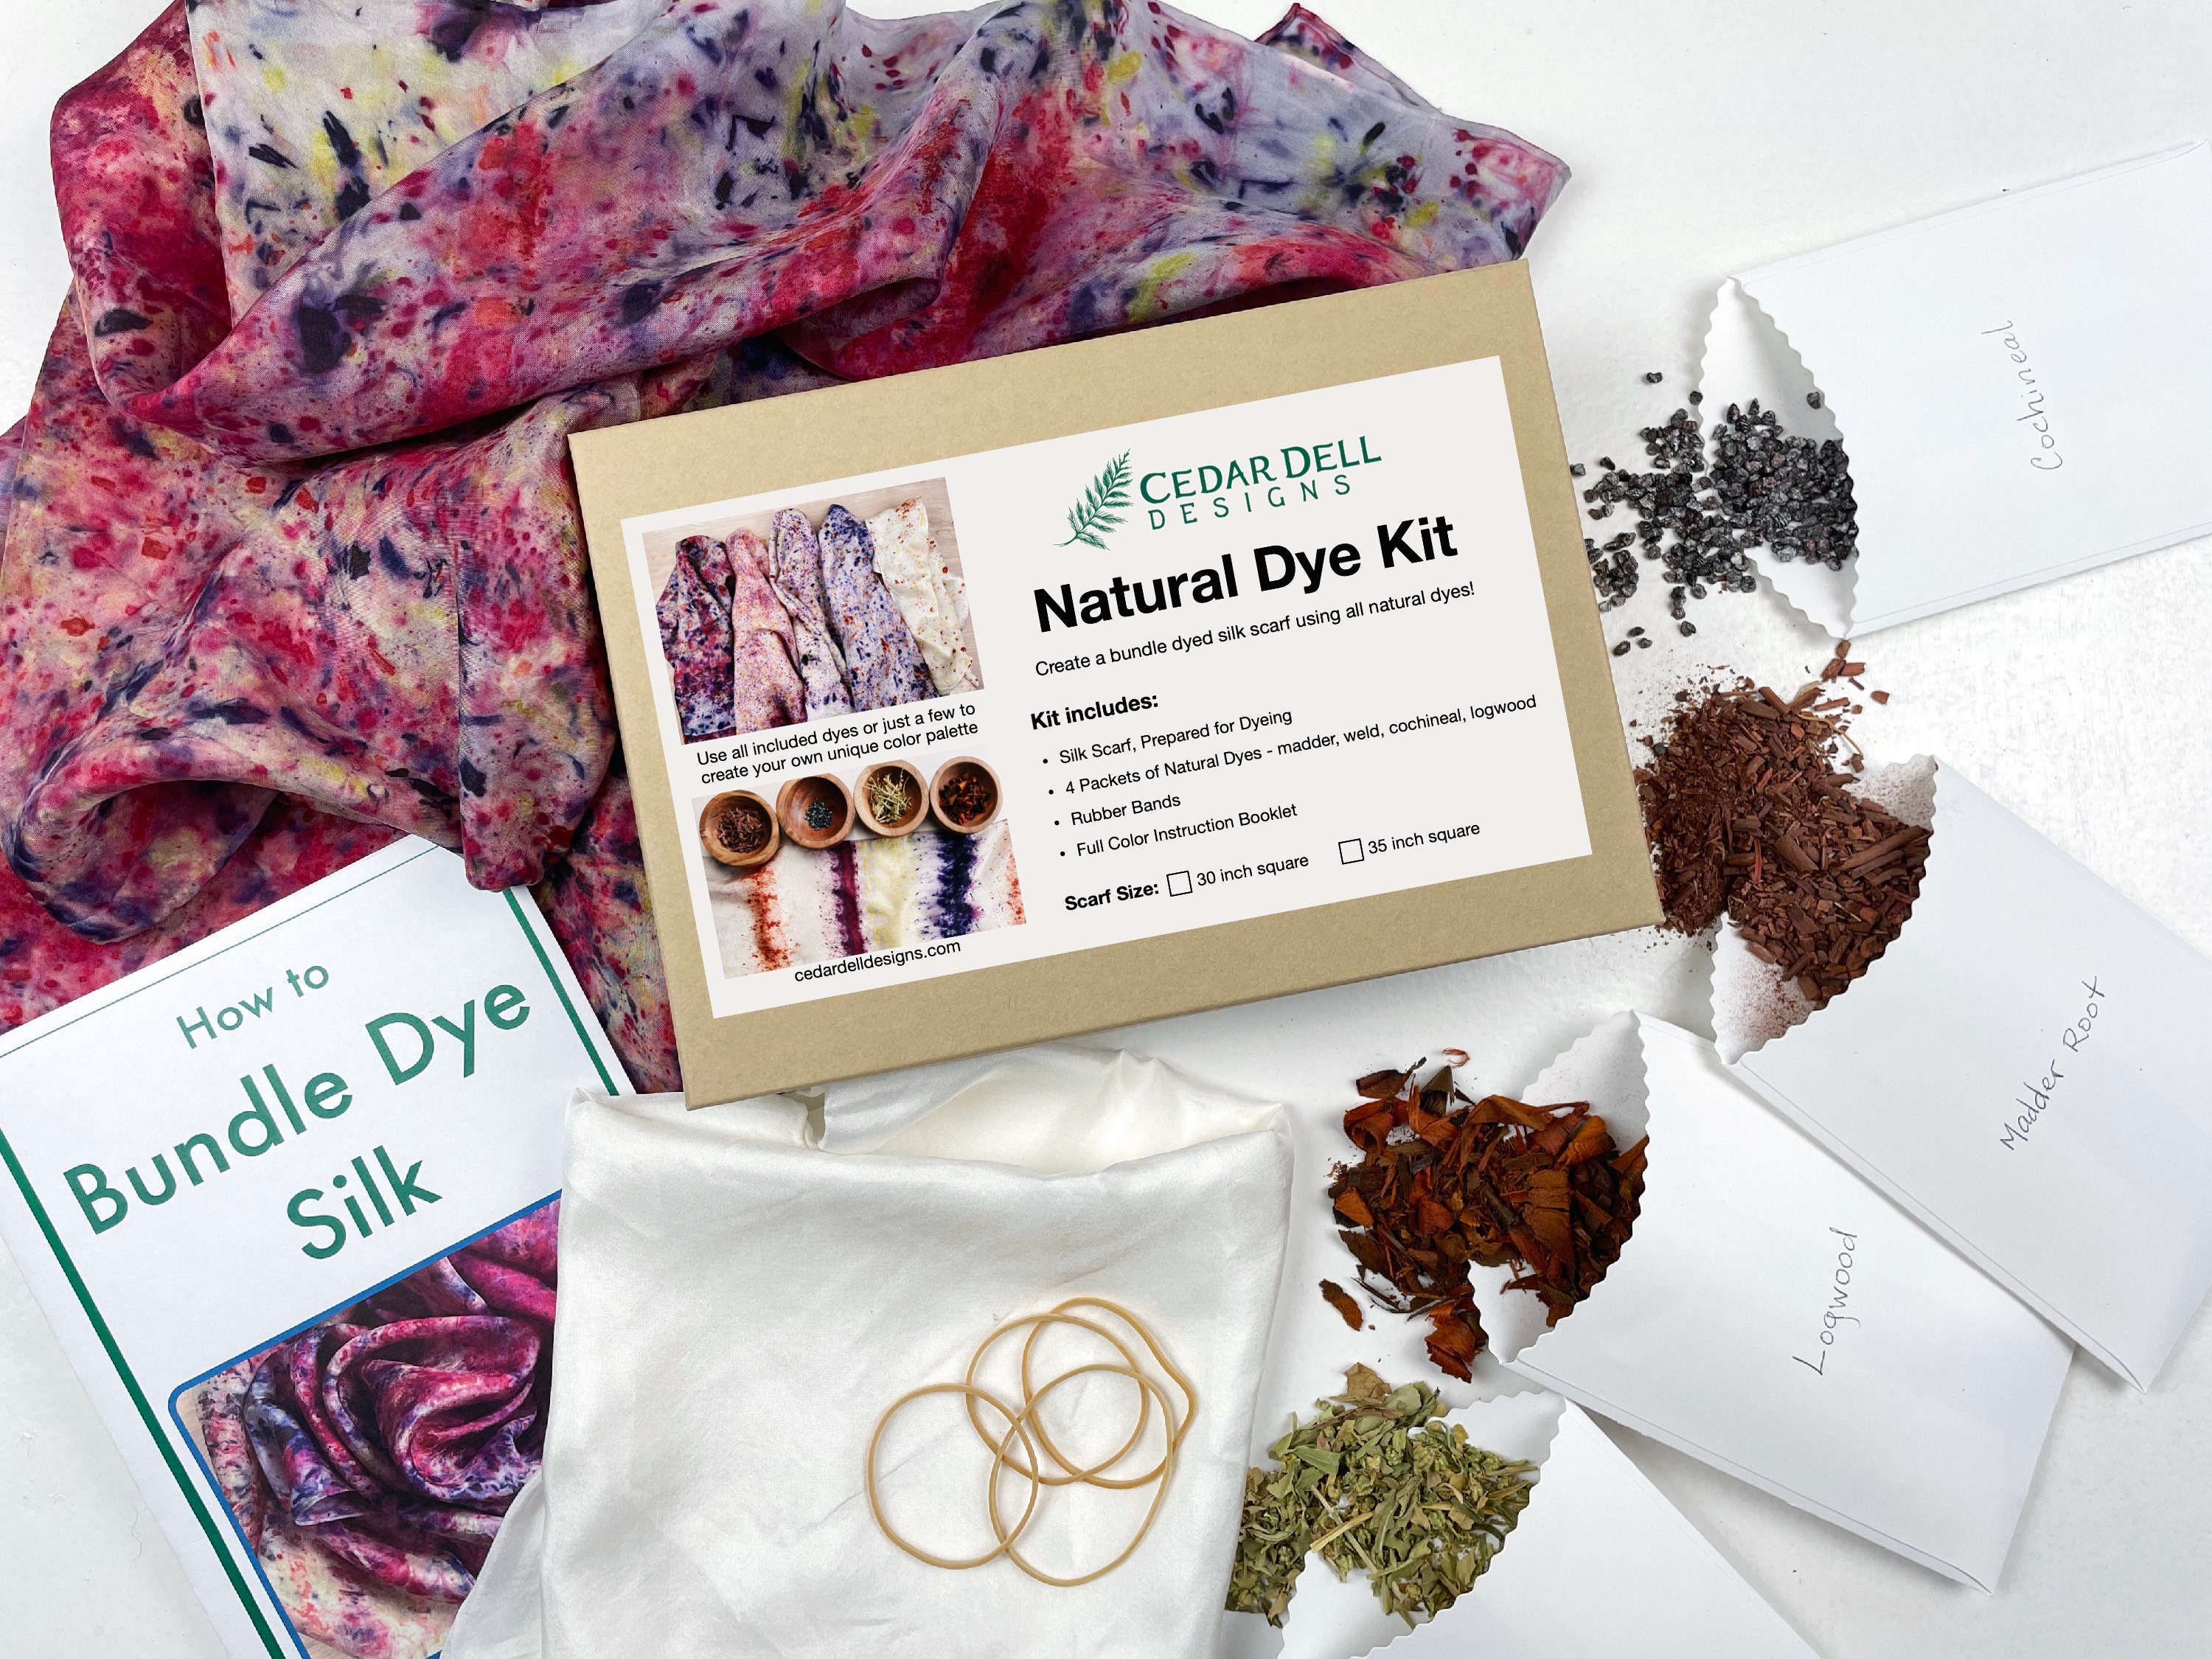 Natural Bundle Dye Kit, Naturally Dye a Silk Scarf, DIY Natural Dye Kit,  Plant Dye Play Silk, Natural Dye Tutorial and Supplies 